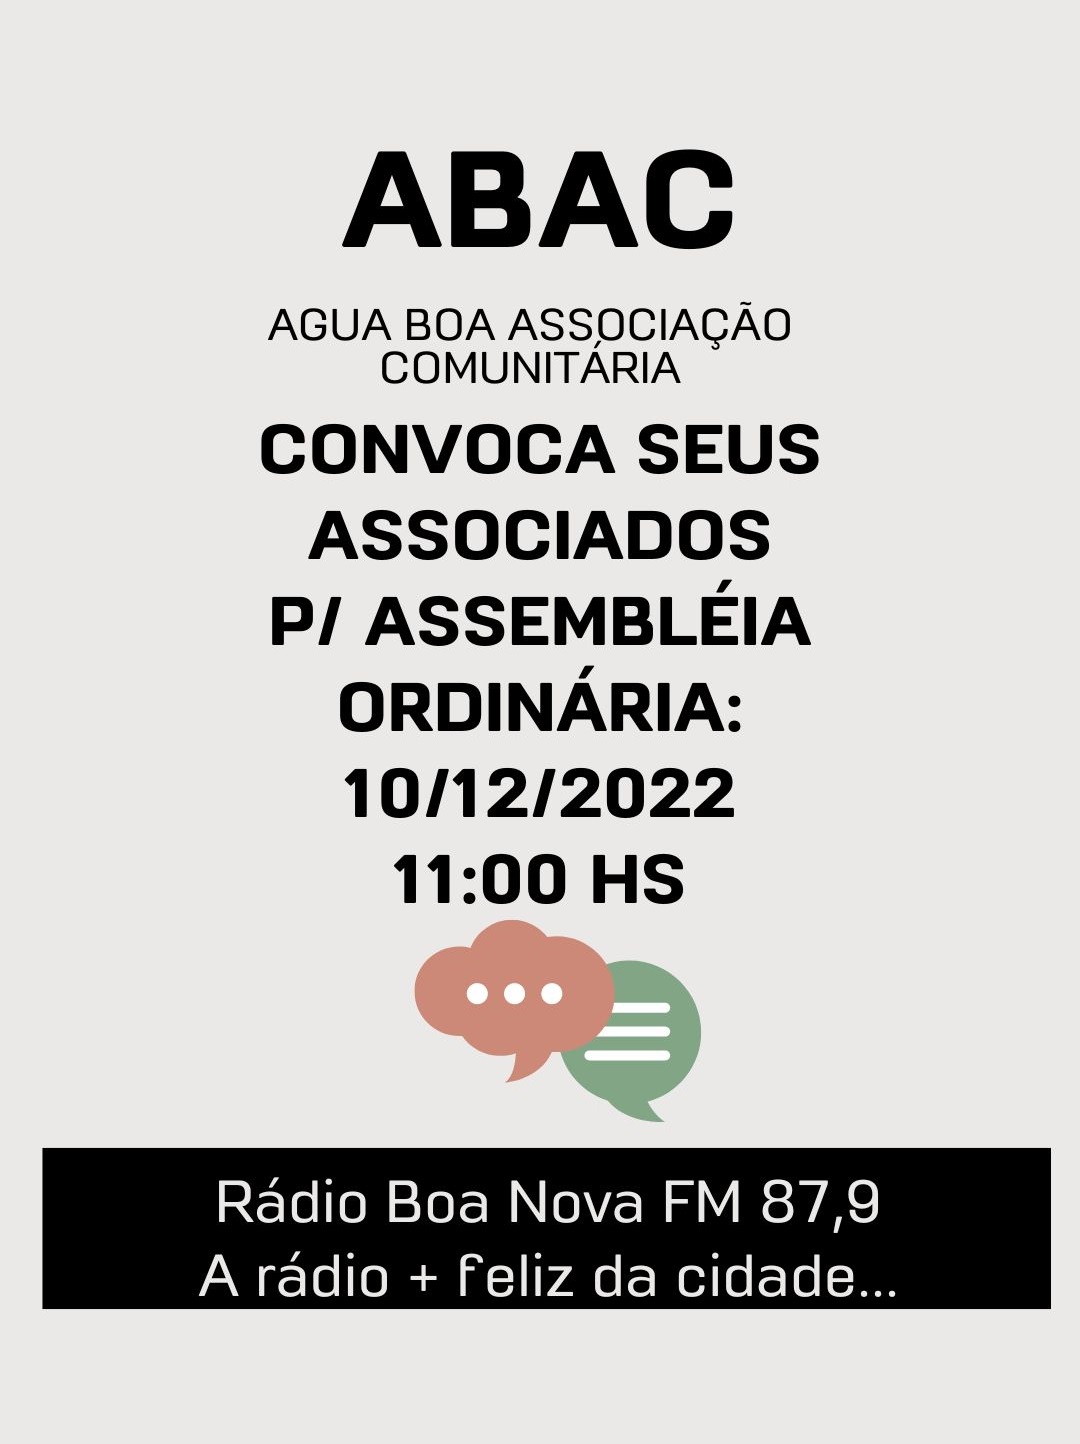 ABAC - ÁGUA BOA ASSOCIAÇÃO COMUNITÁRIA CONVOCA SEUS ASSOCIADOS PARA ASSEMBLÉIA ORDINÁRIA - 10/12/2022 AS 11:00 HS